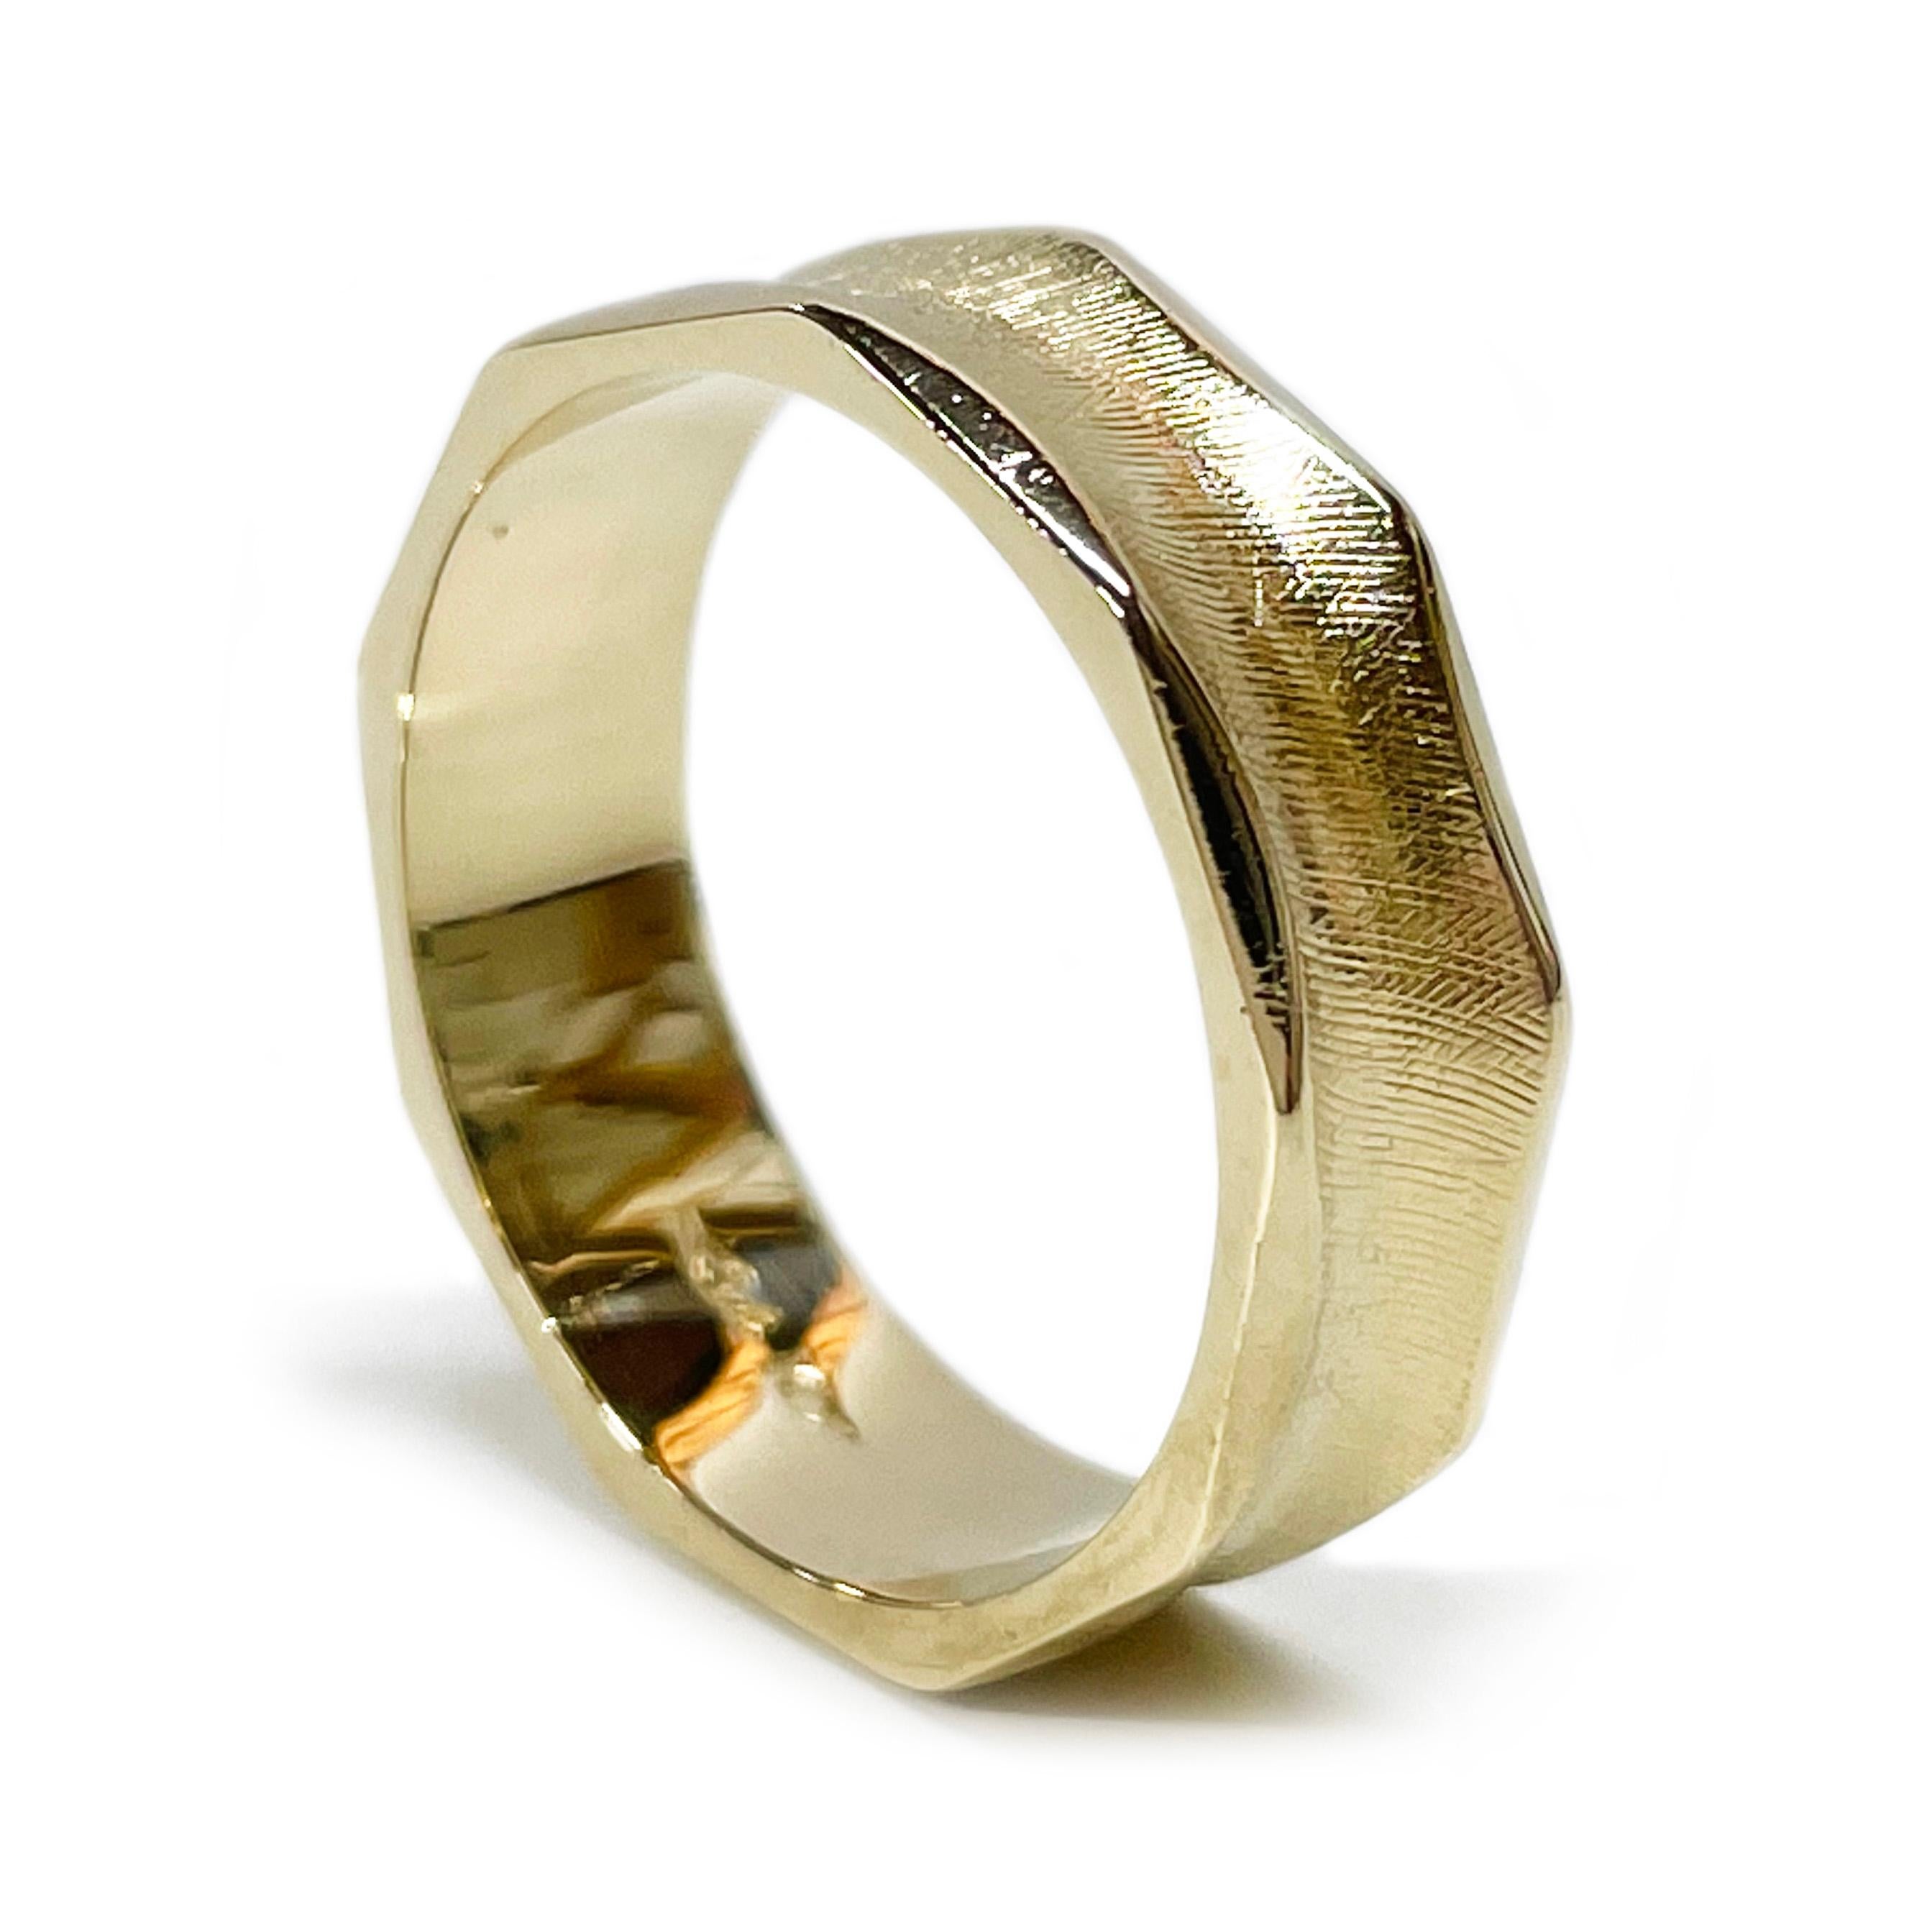 14 Karat Gelbgold Hochzeit Band. Der Ring ist konkav mit einem Florentiner Finish in der Mitte und glänzenden, geschwungenen Akzenten am Rand.  Auf der Innenseite des 6 mm breiten Bandes ist 14K eingestanzt. Die Ringgröße ist 9 1/4. Der Ring hat ein